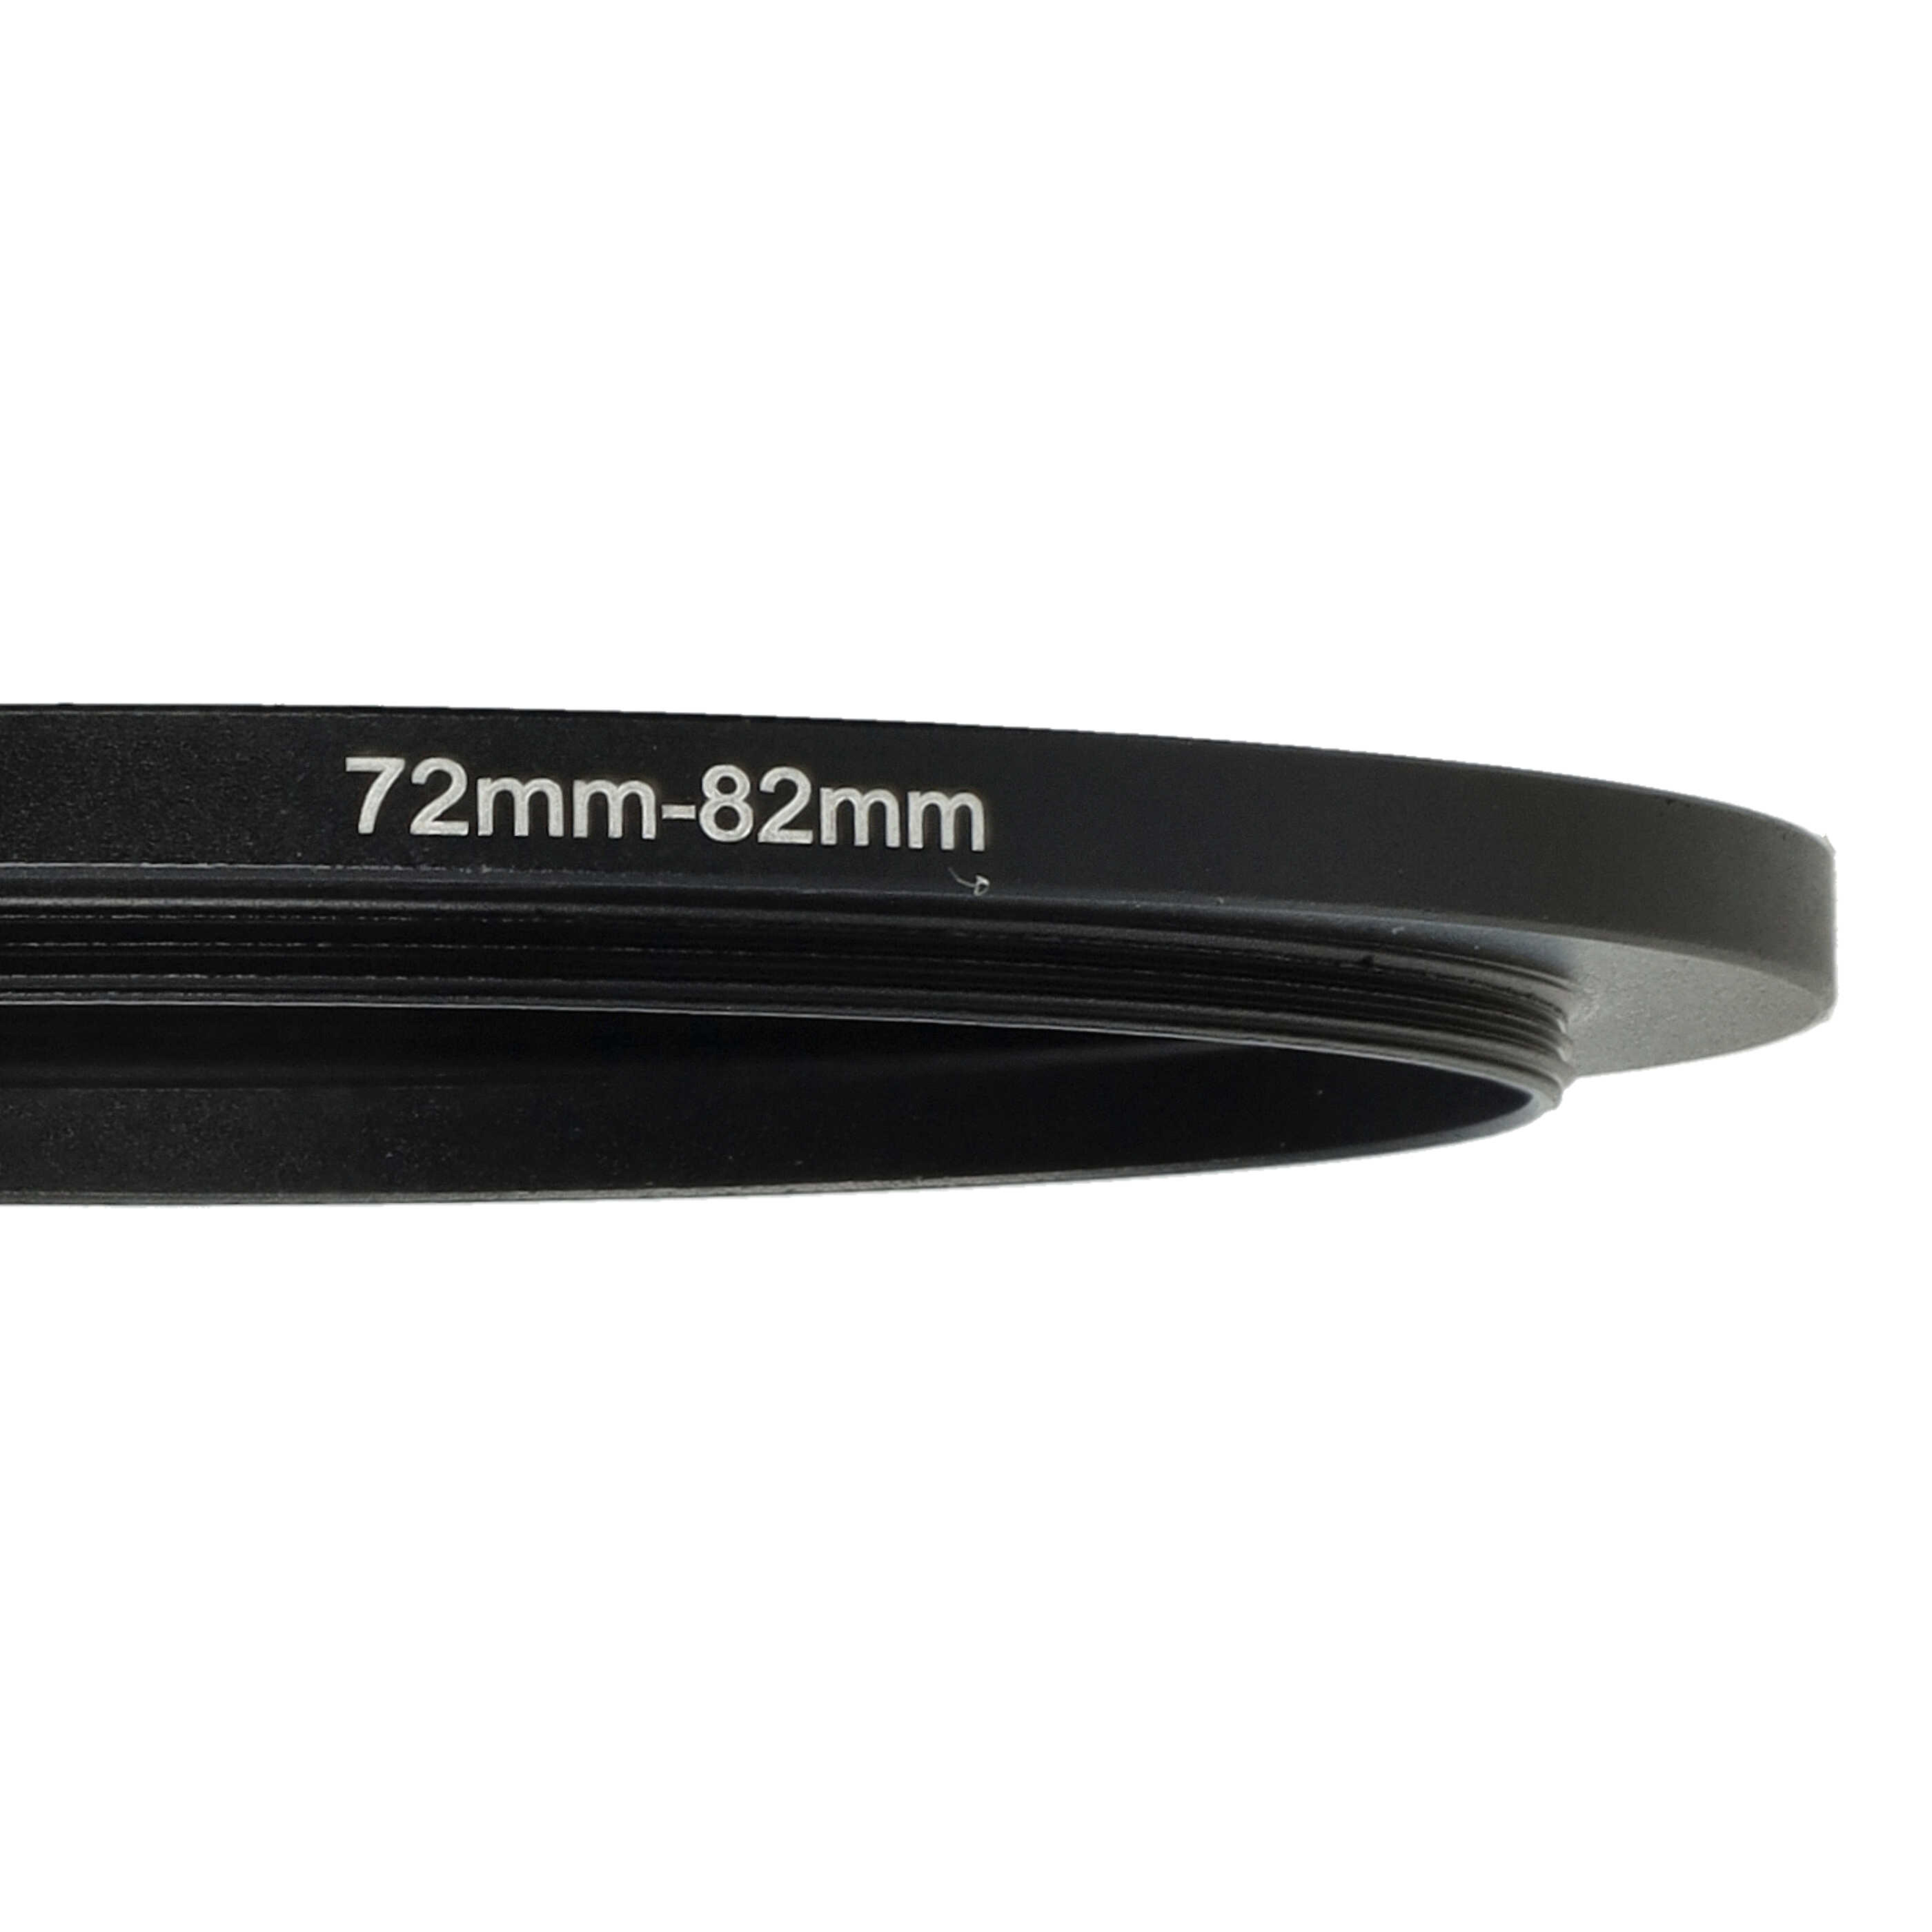 Step-Up-Ring Adapter 72 mm auf 82 mm passend für diverse Kamera-Objektive - Filteradapter